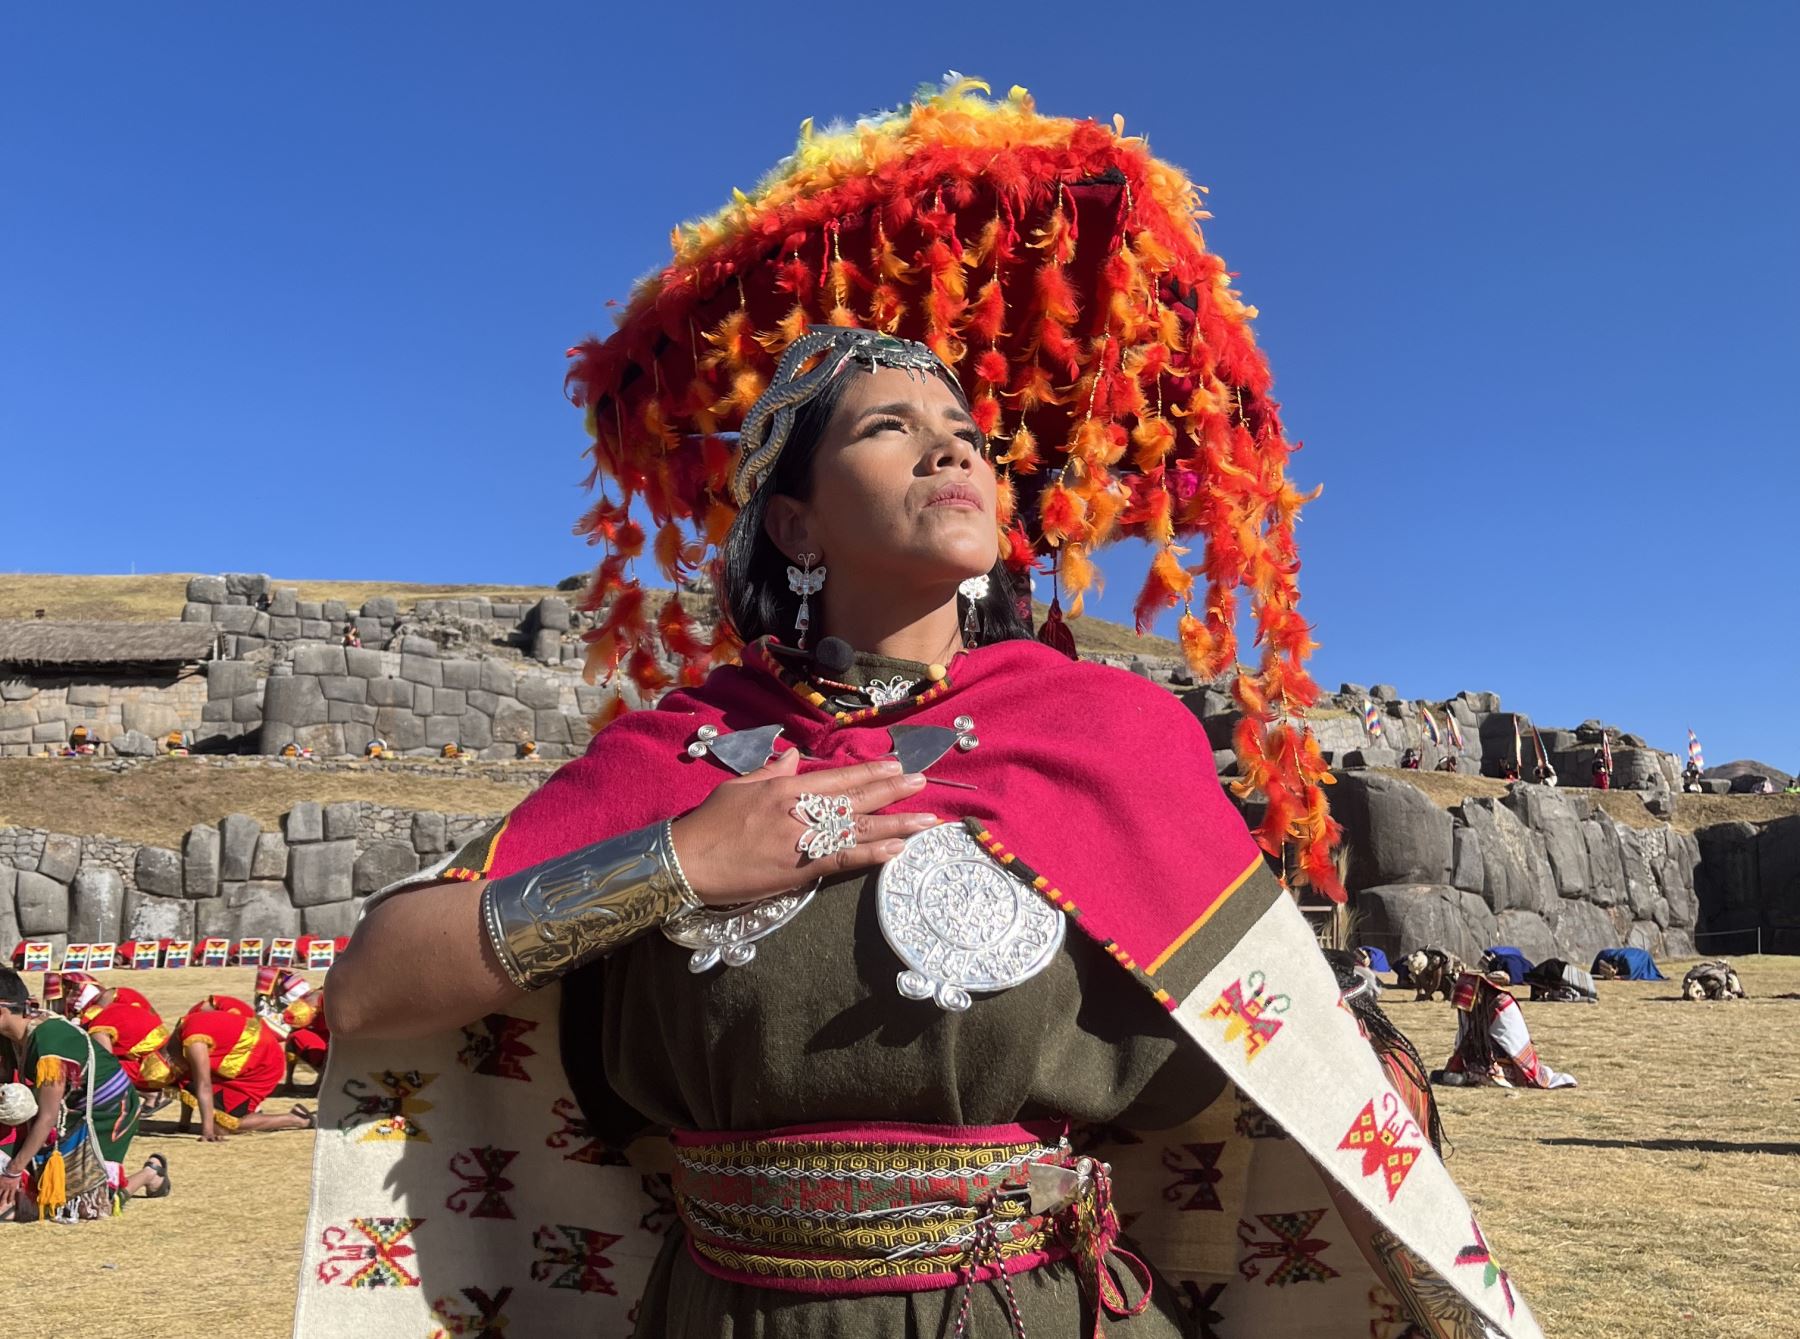 El Perú y el mundo gozarán de la fiesta ancestral del Inti Raymi Edición Bicentenario.